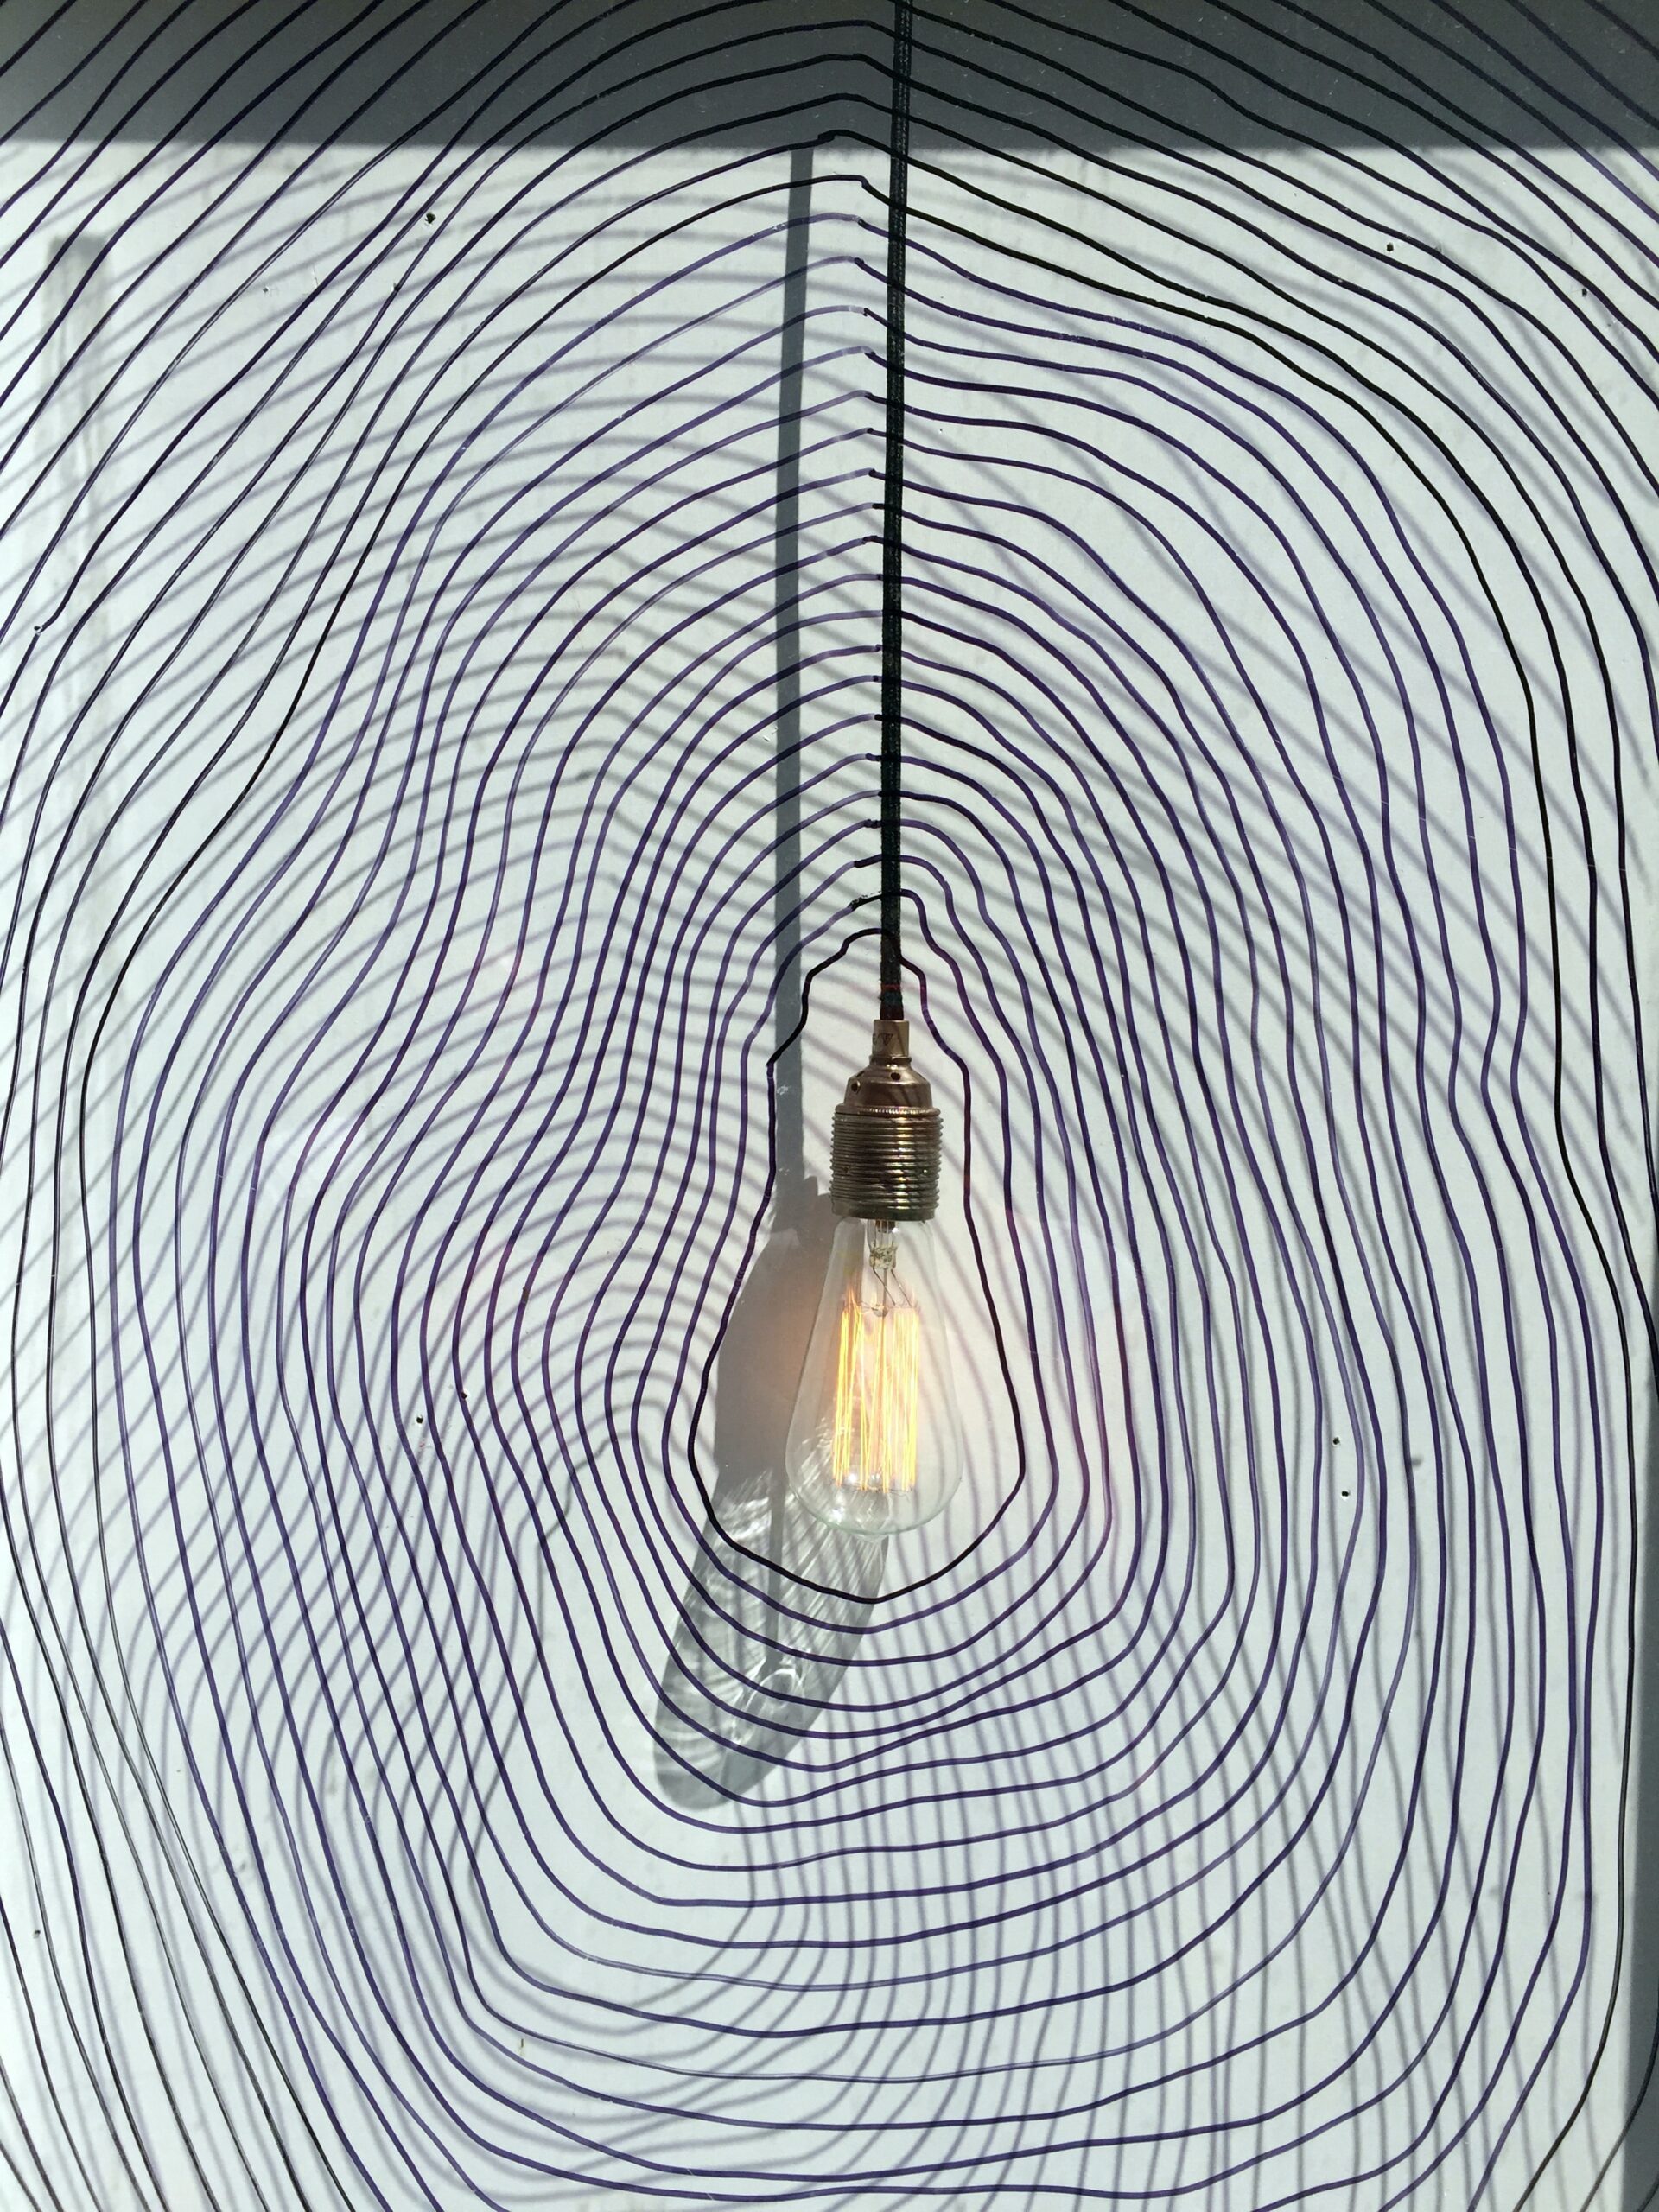 lightbulb with illustrative lights rippling